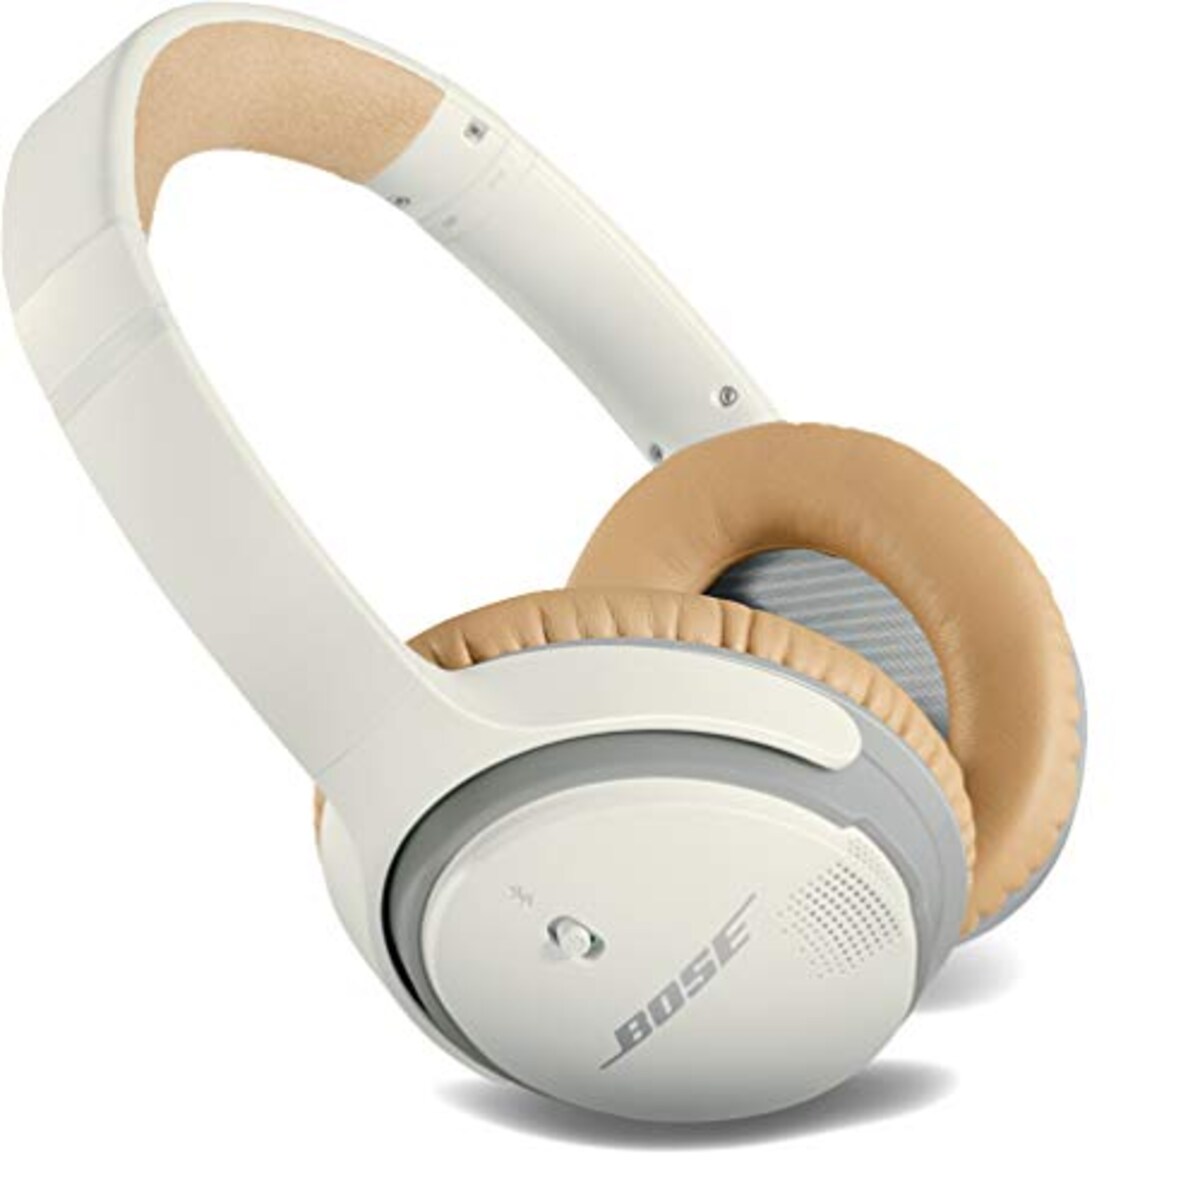  SoundLink around-ear wireless headphones II 画像2 